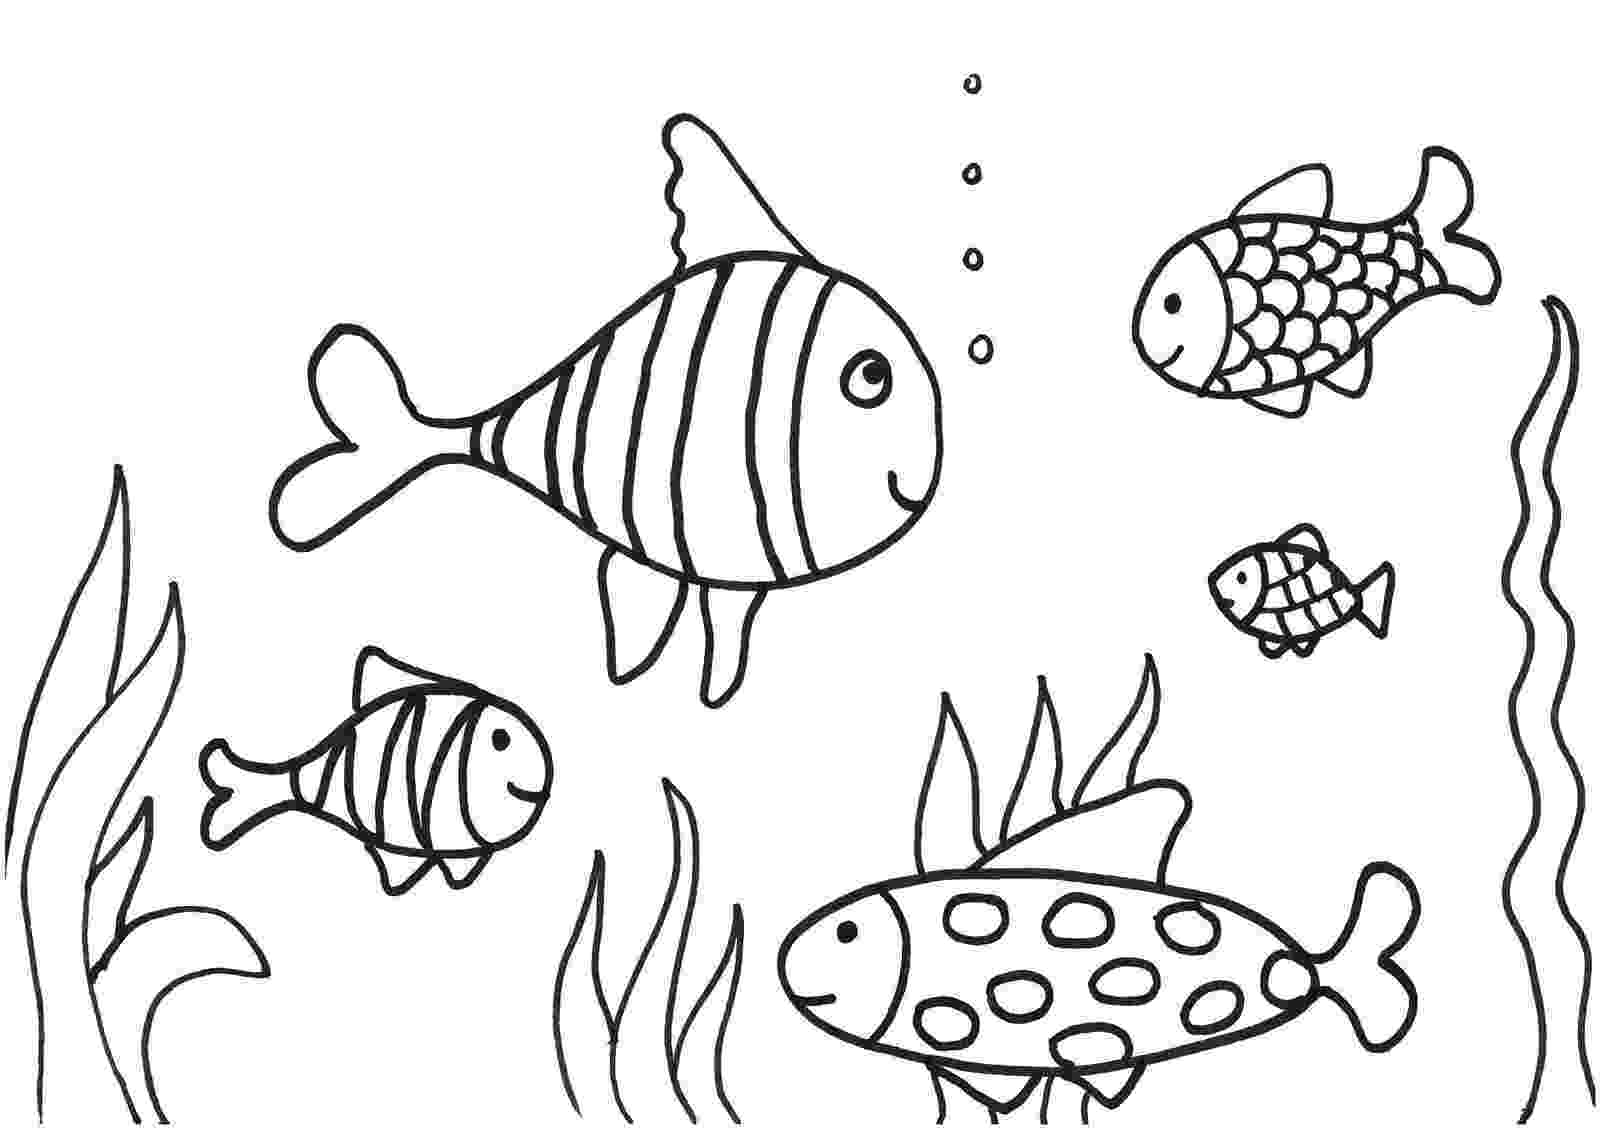 fish coloring worksheet free printable fish coloring pages for kids cool2bkids worksheet fish coloring 